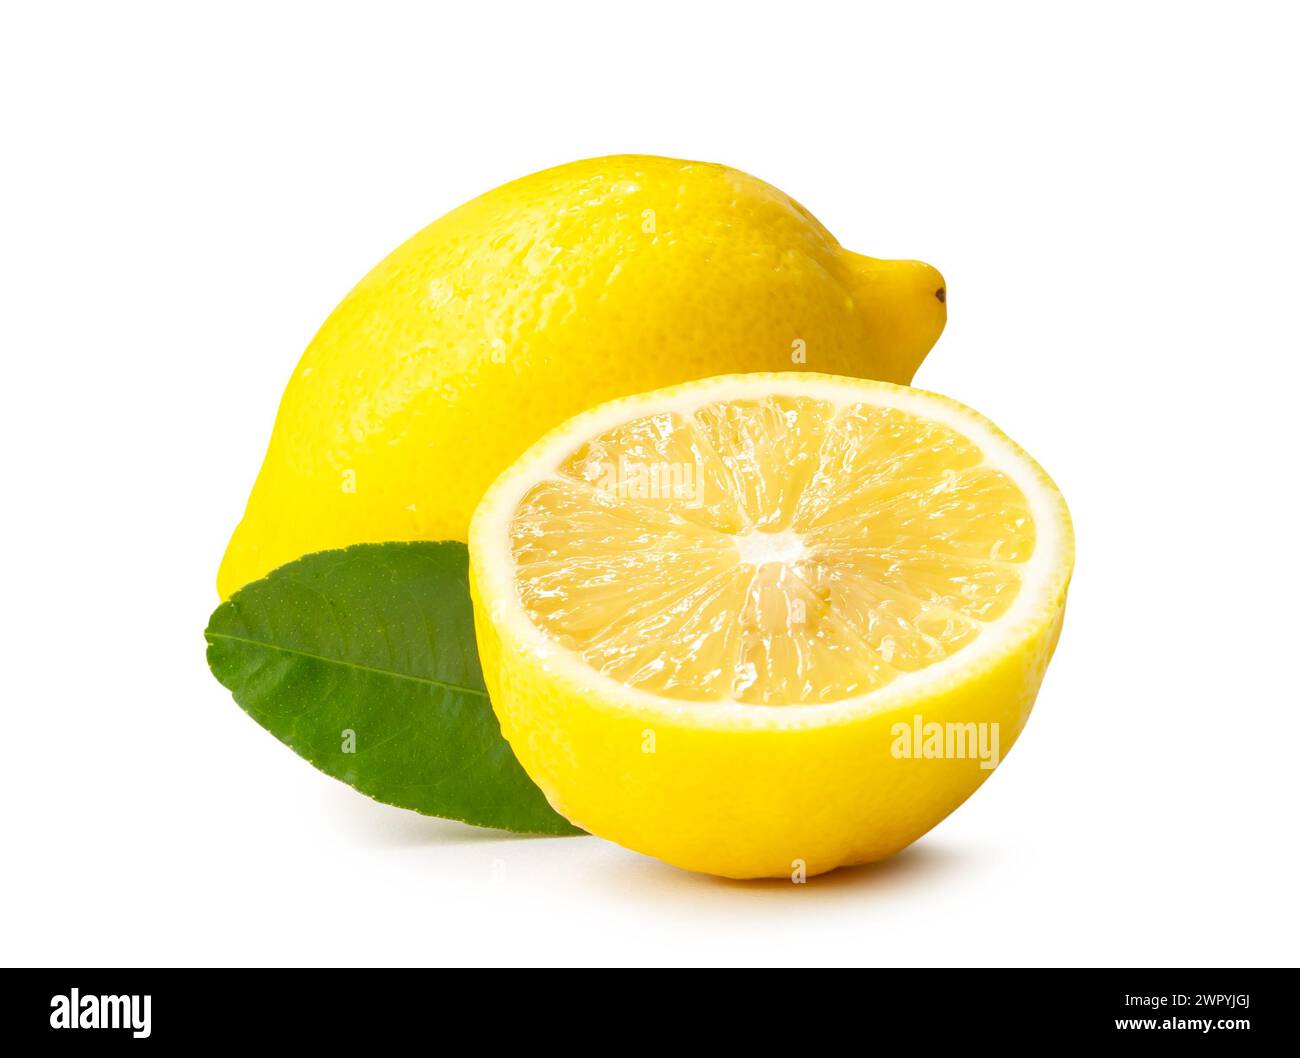 La vista frontale del limone giallo con metà e foglia è isolata su sfondo bianco con percorso di ritaglio. Foto Stock